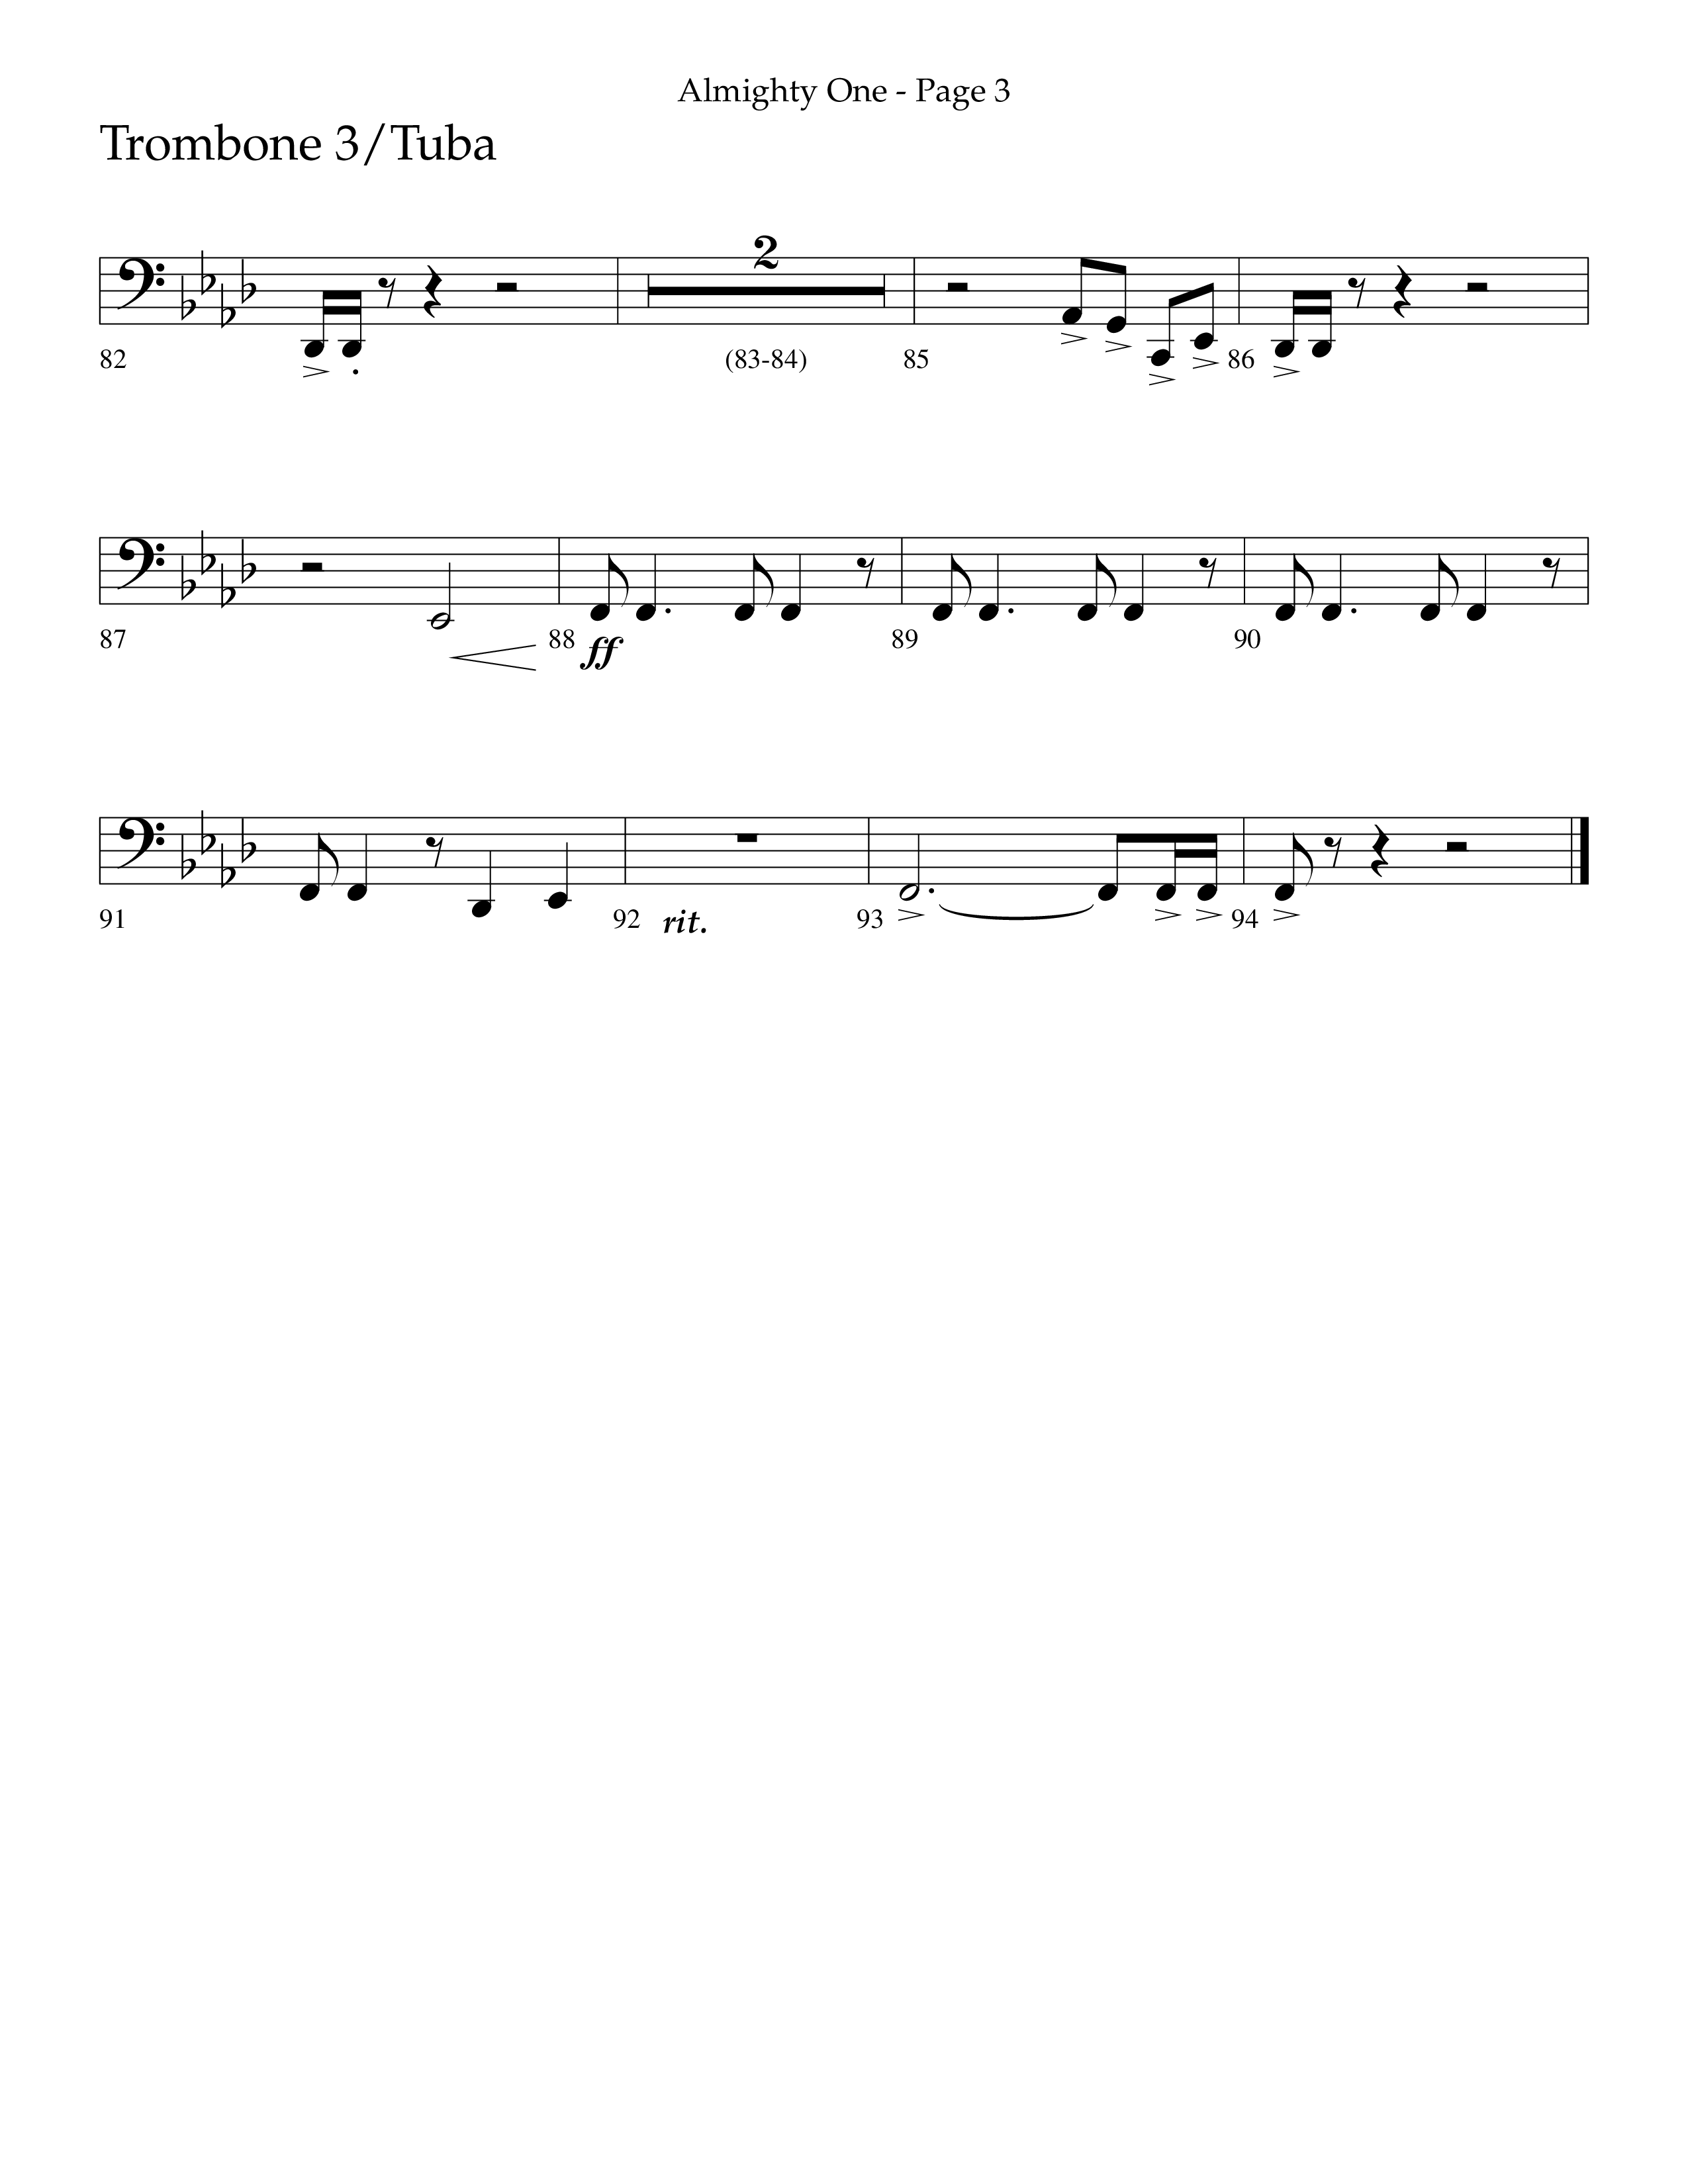 Almighty One (Choral Anthem SATB) Trombone 3/Tuba (Lifeway Choral / Arr. Bradley Knight)